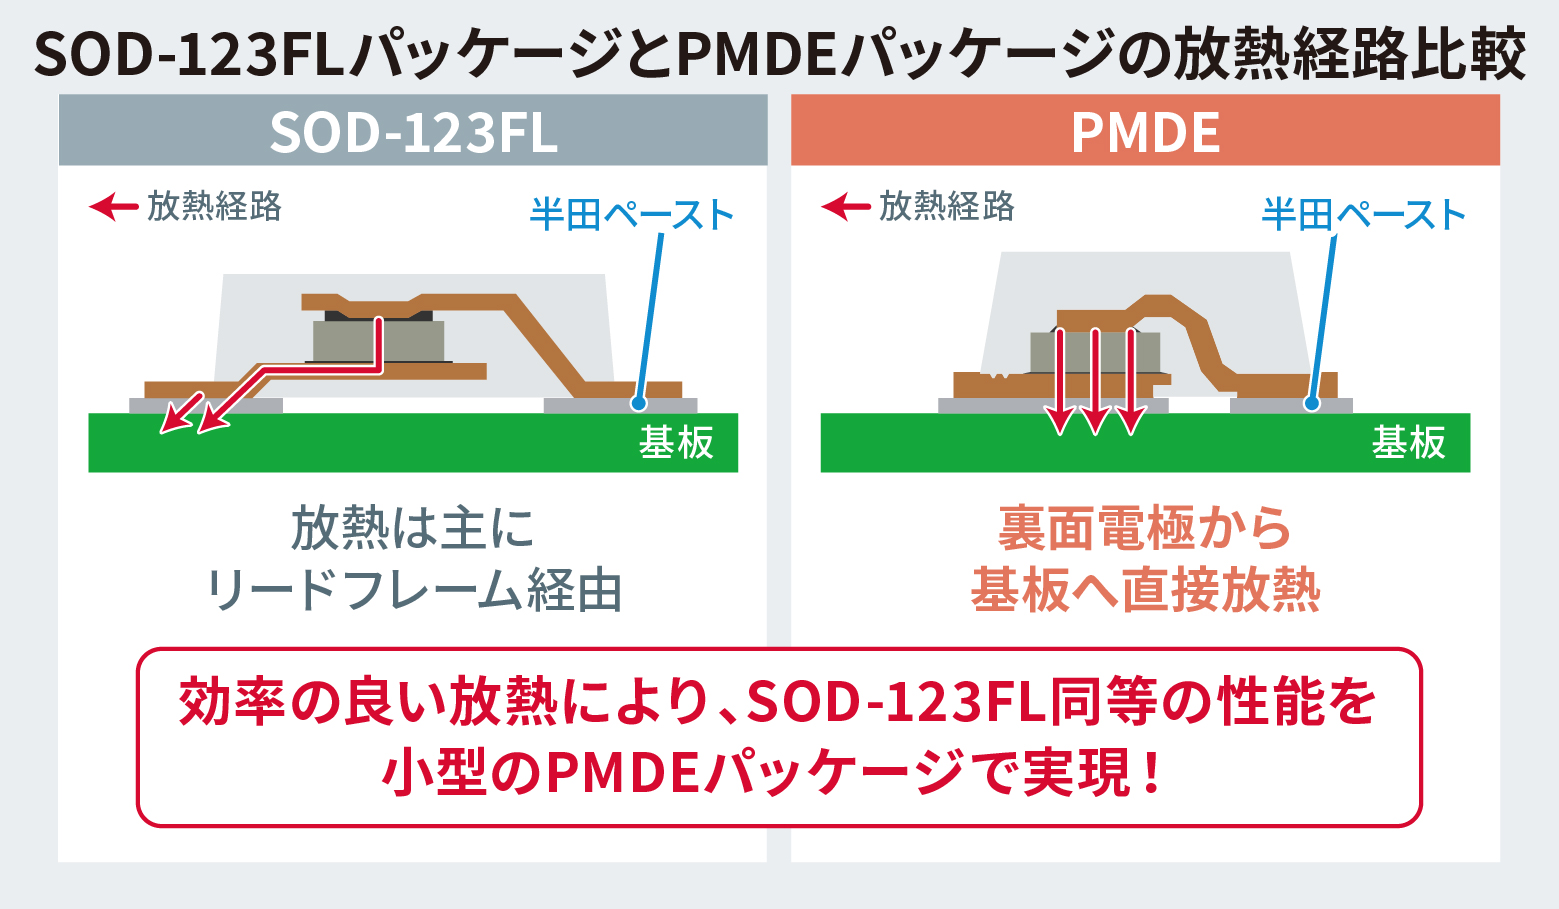 SOD-123FLパッケージとPMDEパッケージの放熱経路比較